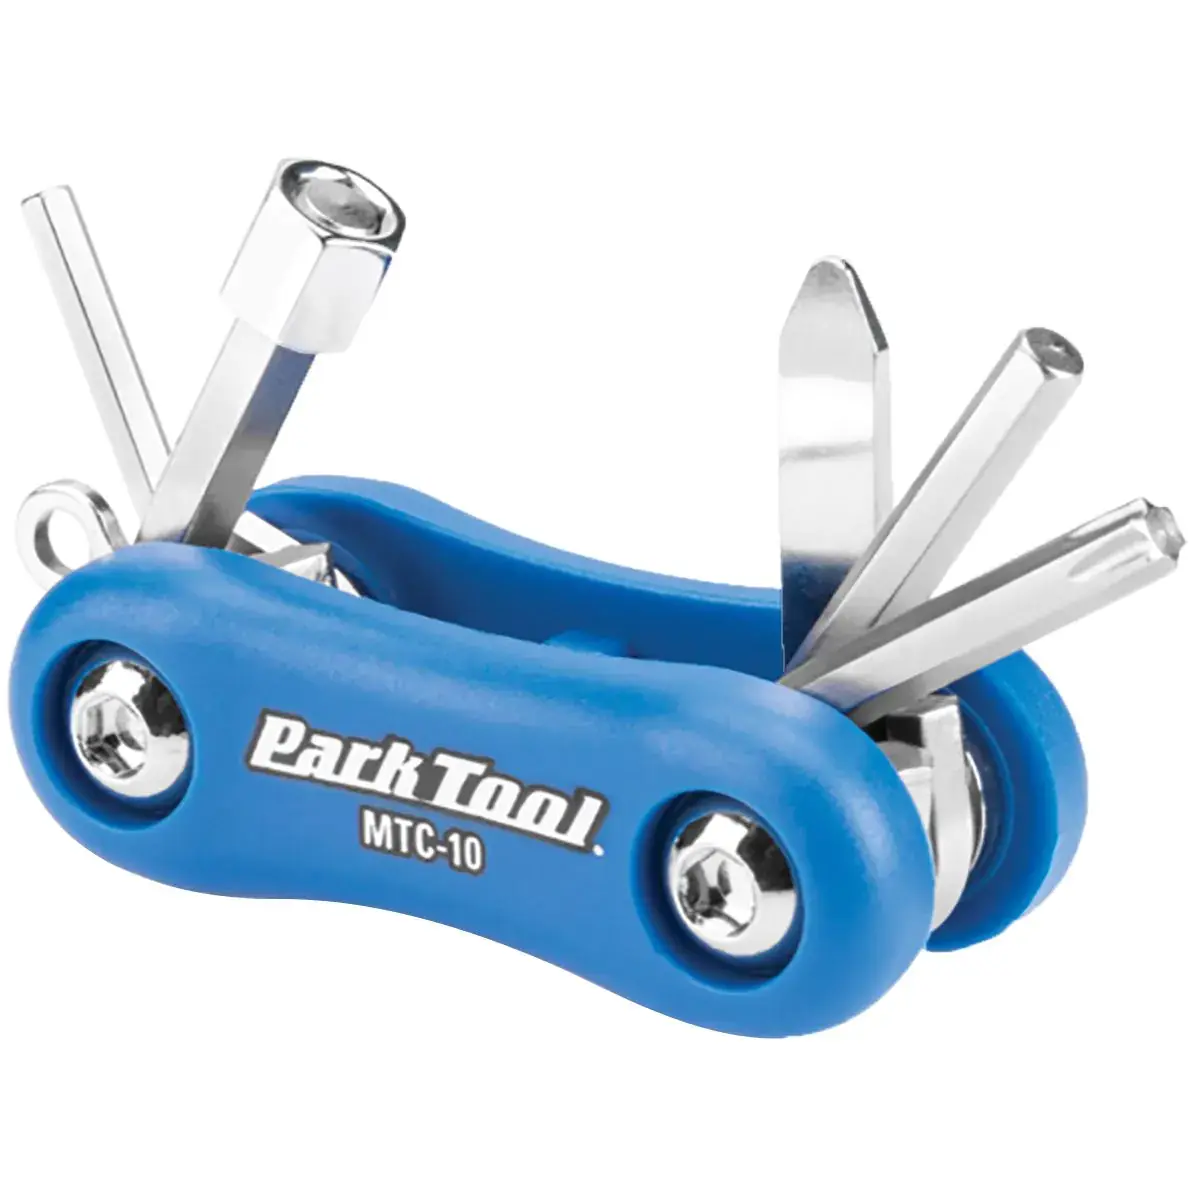 Park Tool Park Tool, MTC-10, Multi-Tools, Number of Tools: 7